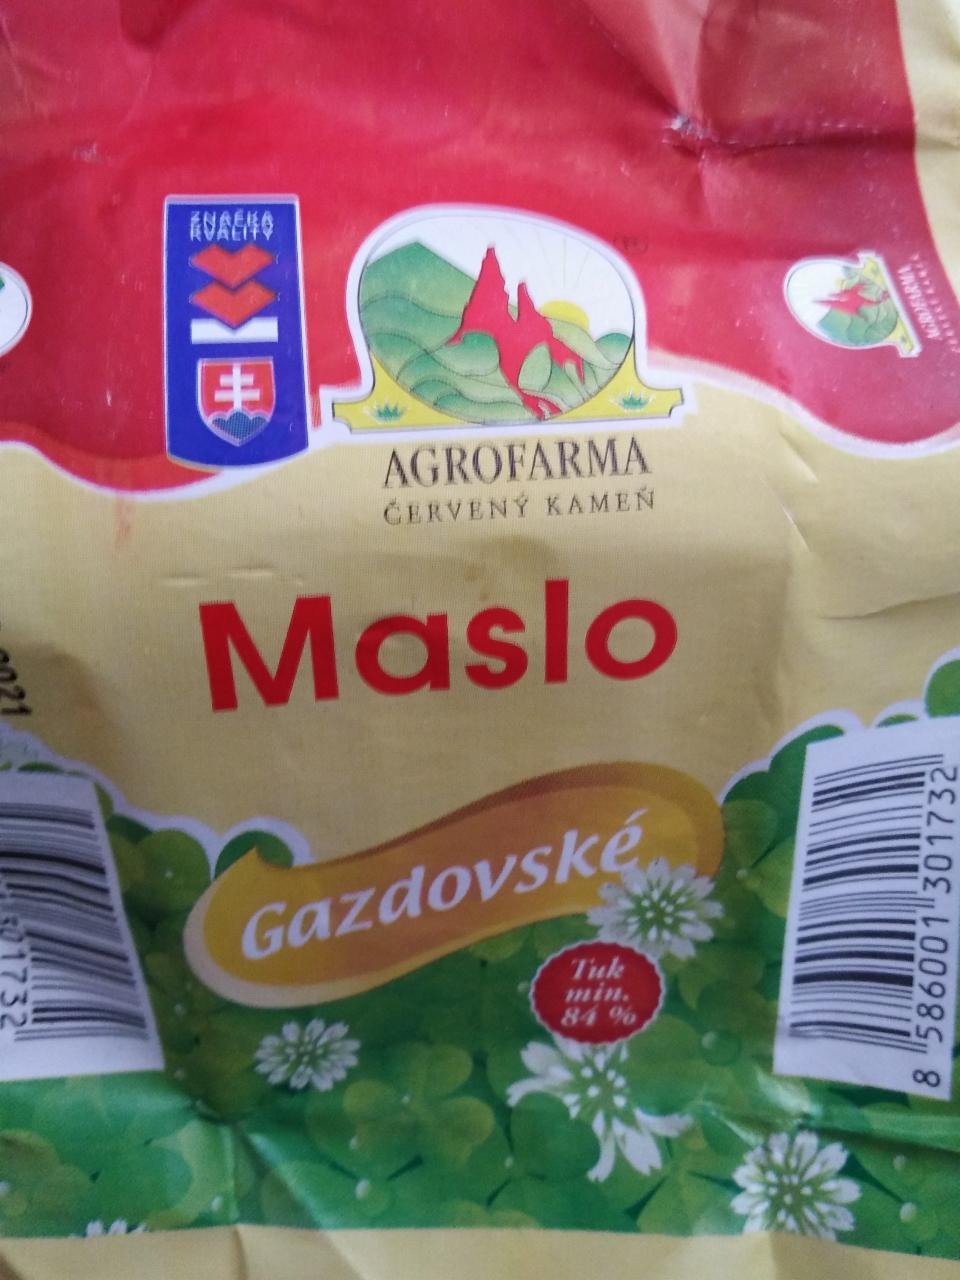 Fotografie - Gazdovské máslo AgroFarma